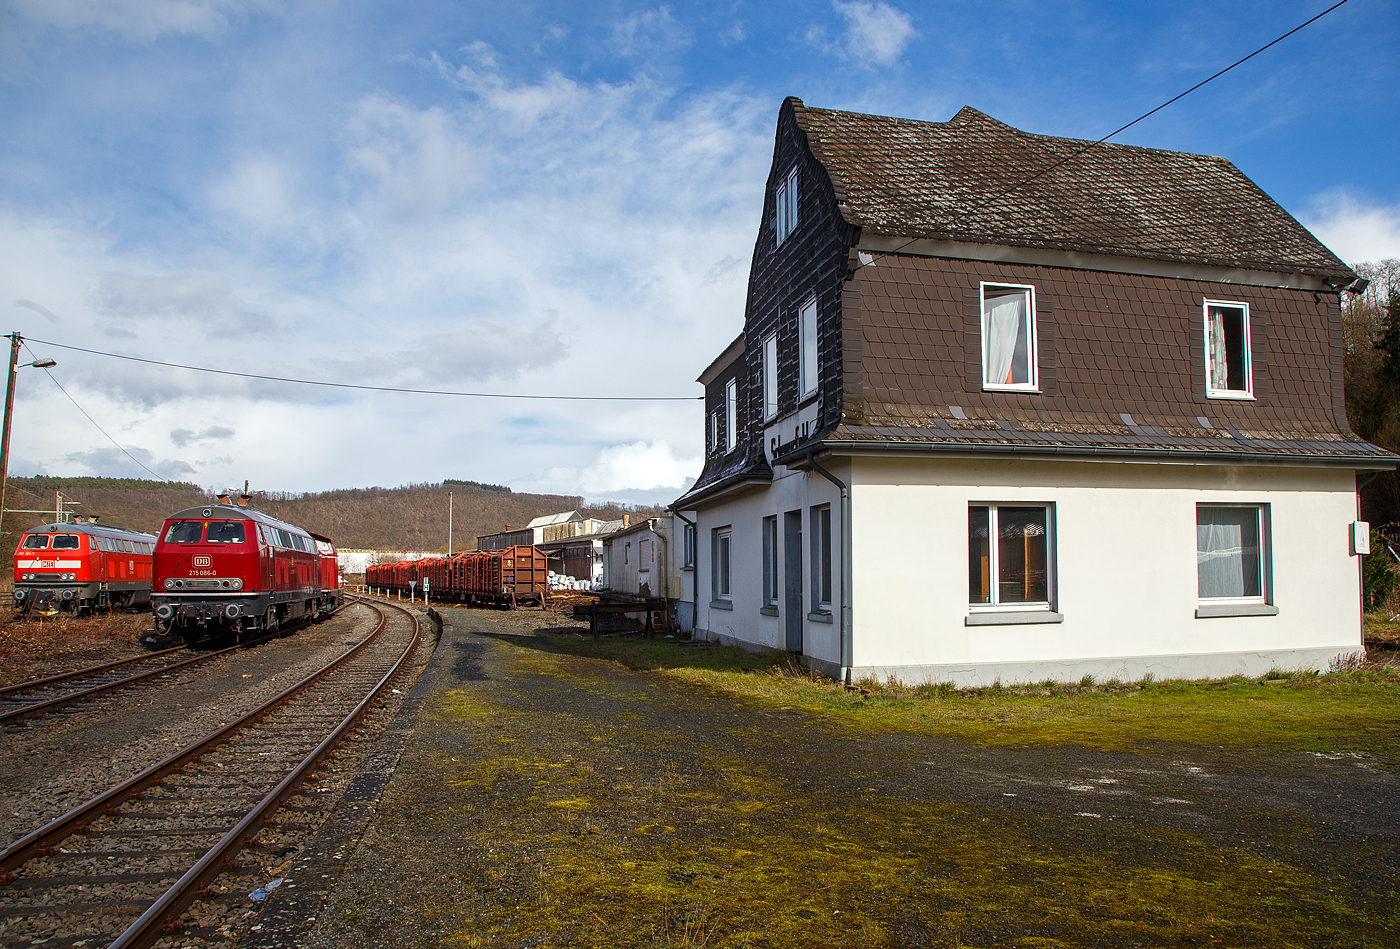 Der Kleinbahnhof der WEBA (Westerwaldbahn) in Scheuerfeld (Sieg) am 25.03.2023. 

Hier stehen Holzzüge und links die 218 191-5, die 225 086-8 und die 213 336-1.